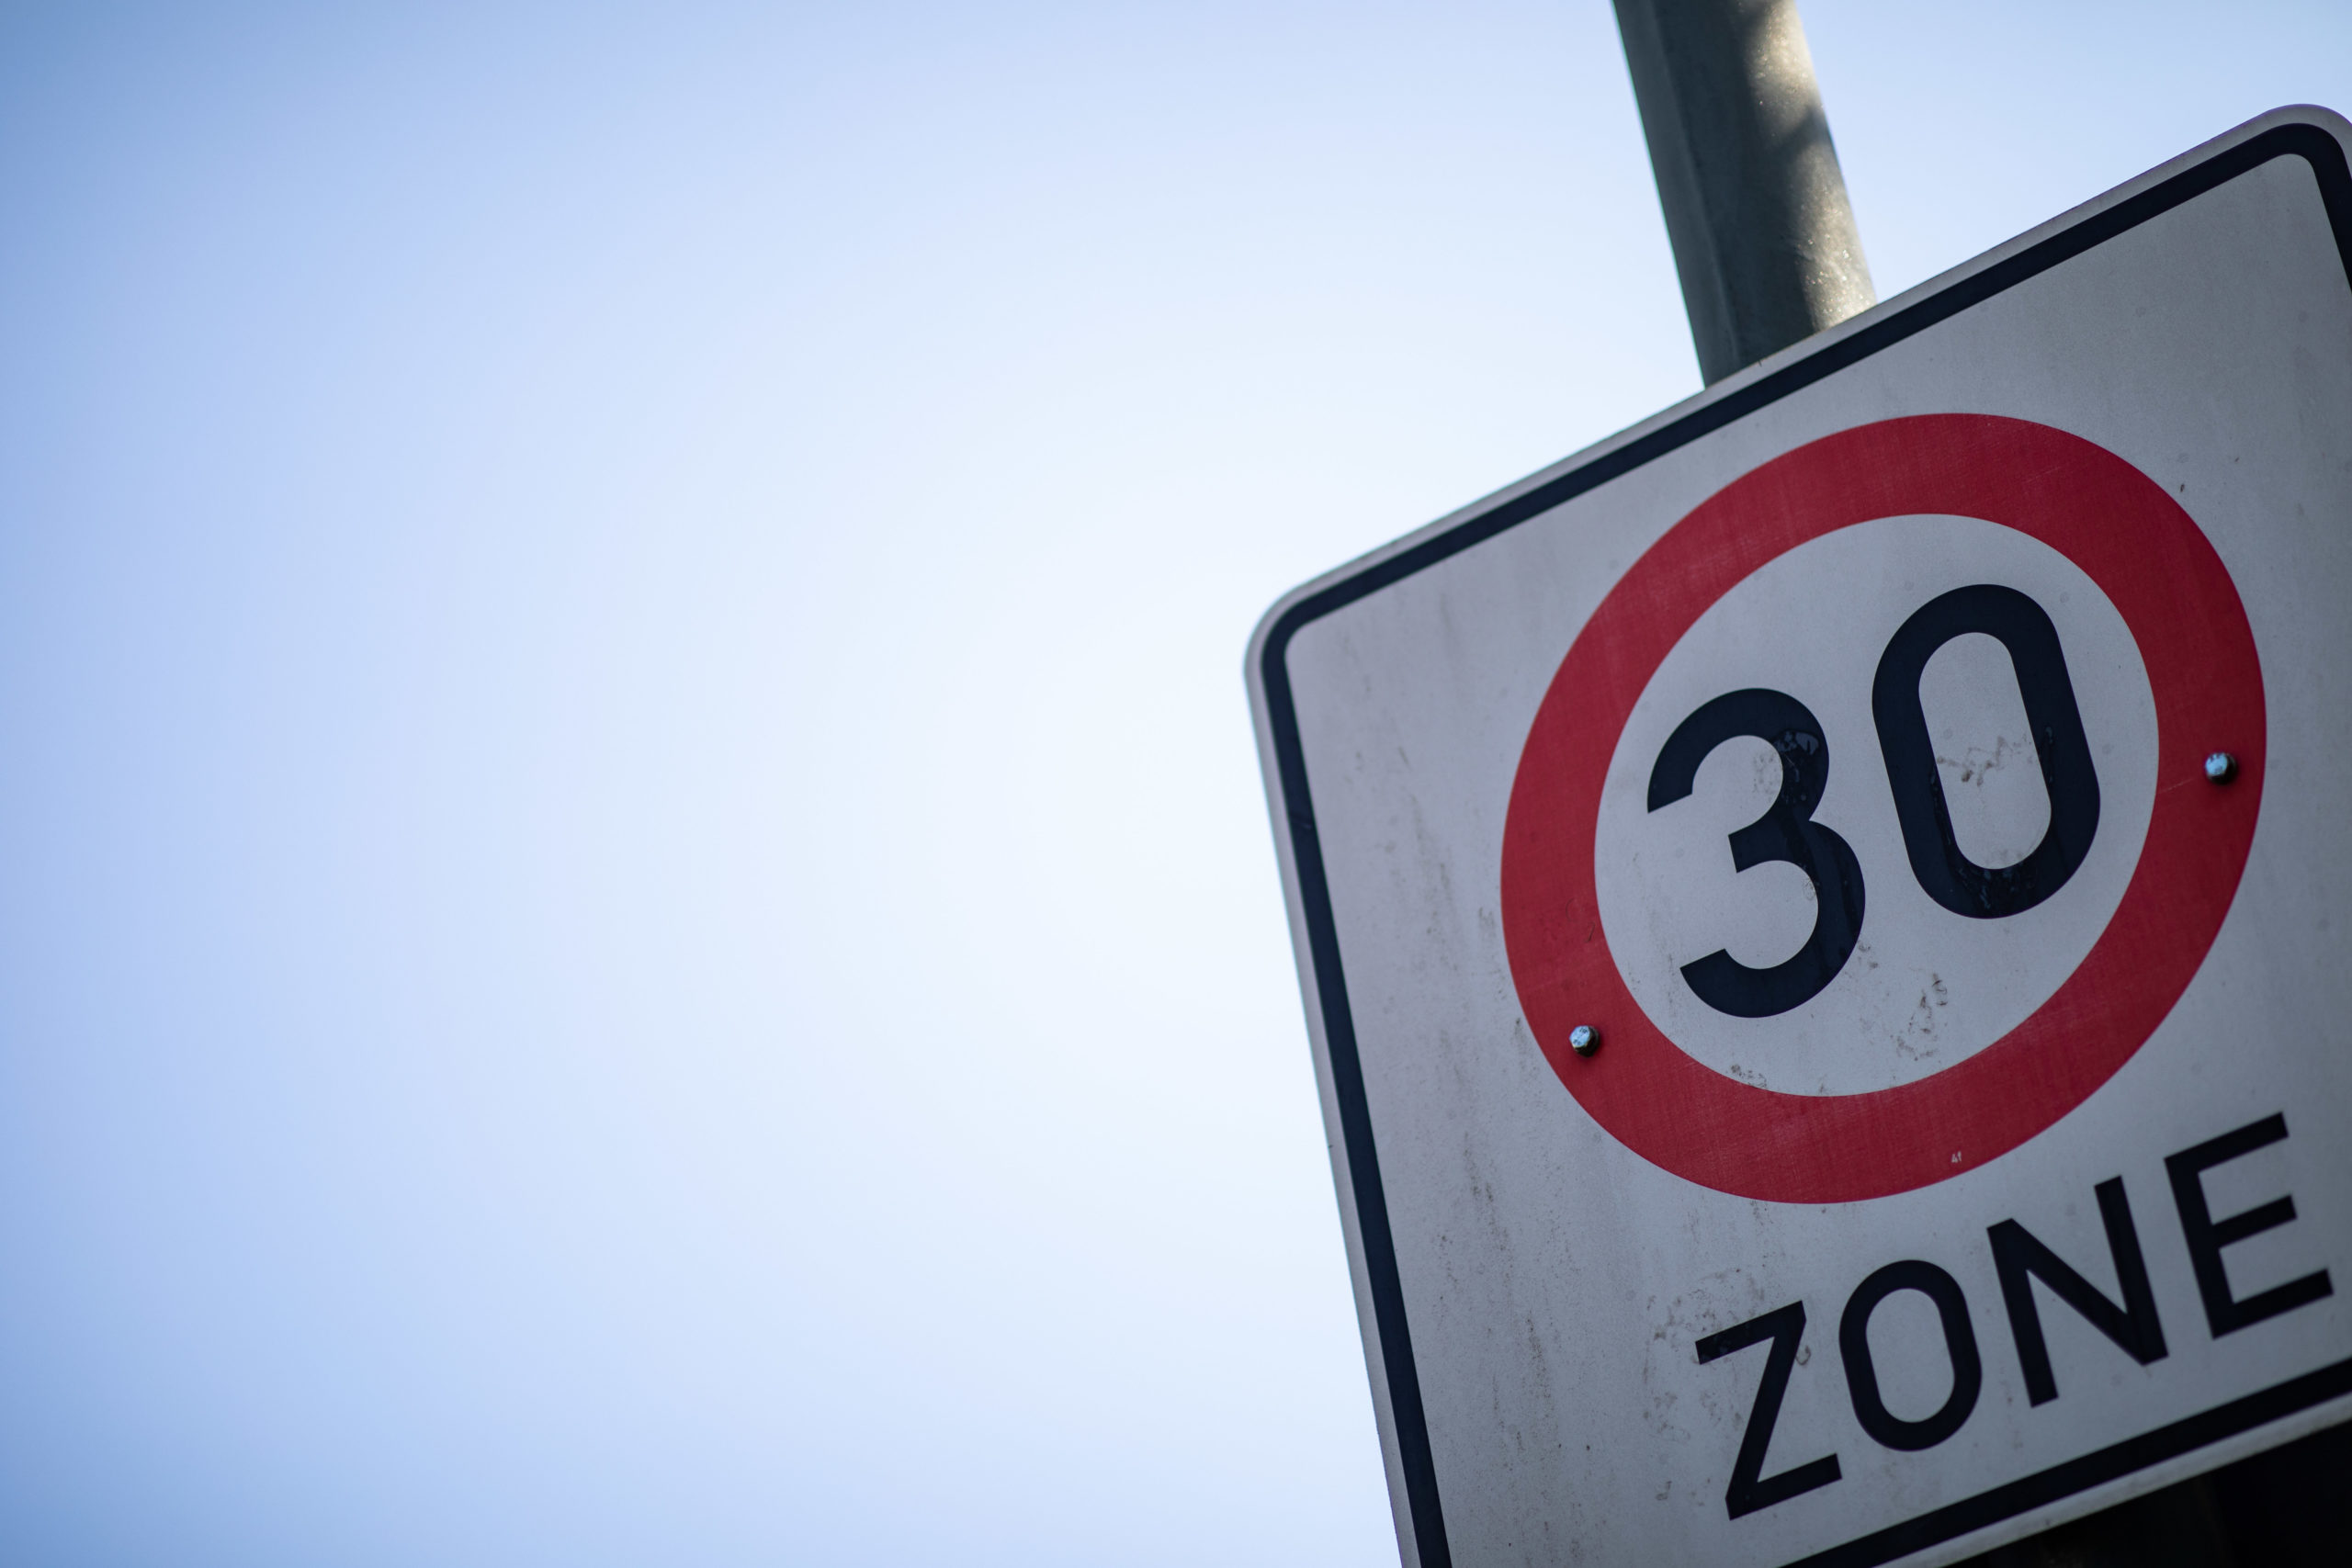 La Flandre se prononce en faveur d'une limitation de vitesse à 30 km/h dans les agglomérations